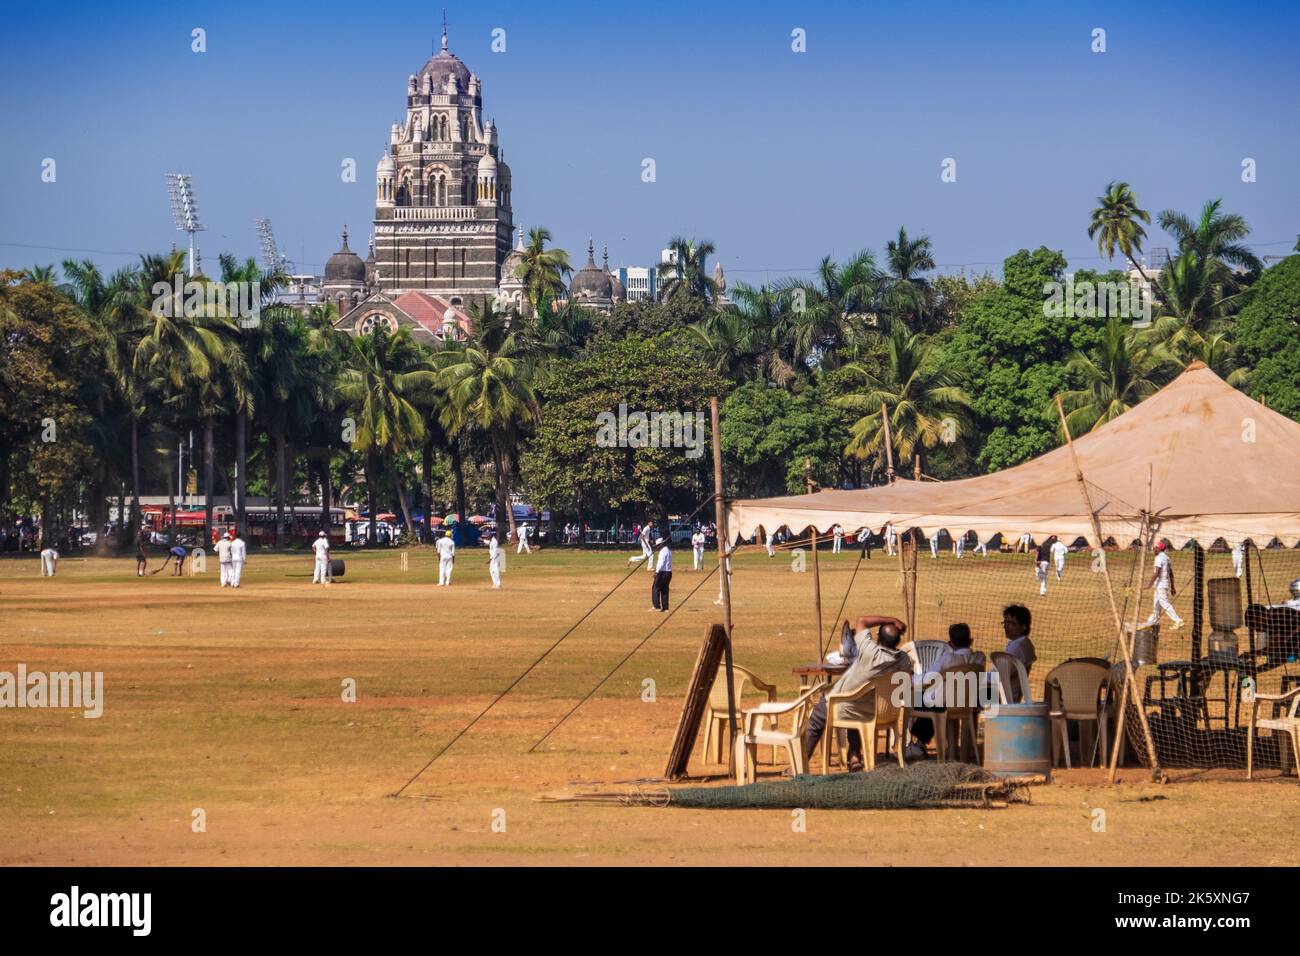 Cricket at the Oval Maidan in Mumbai / Bombay, India Stock Photo